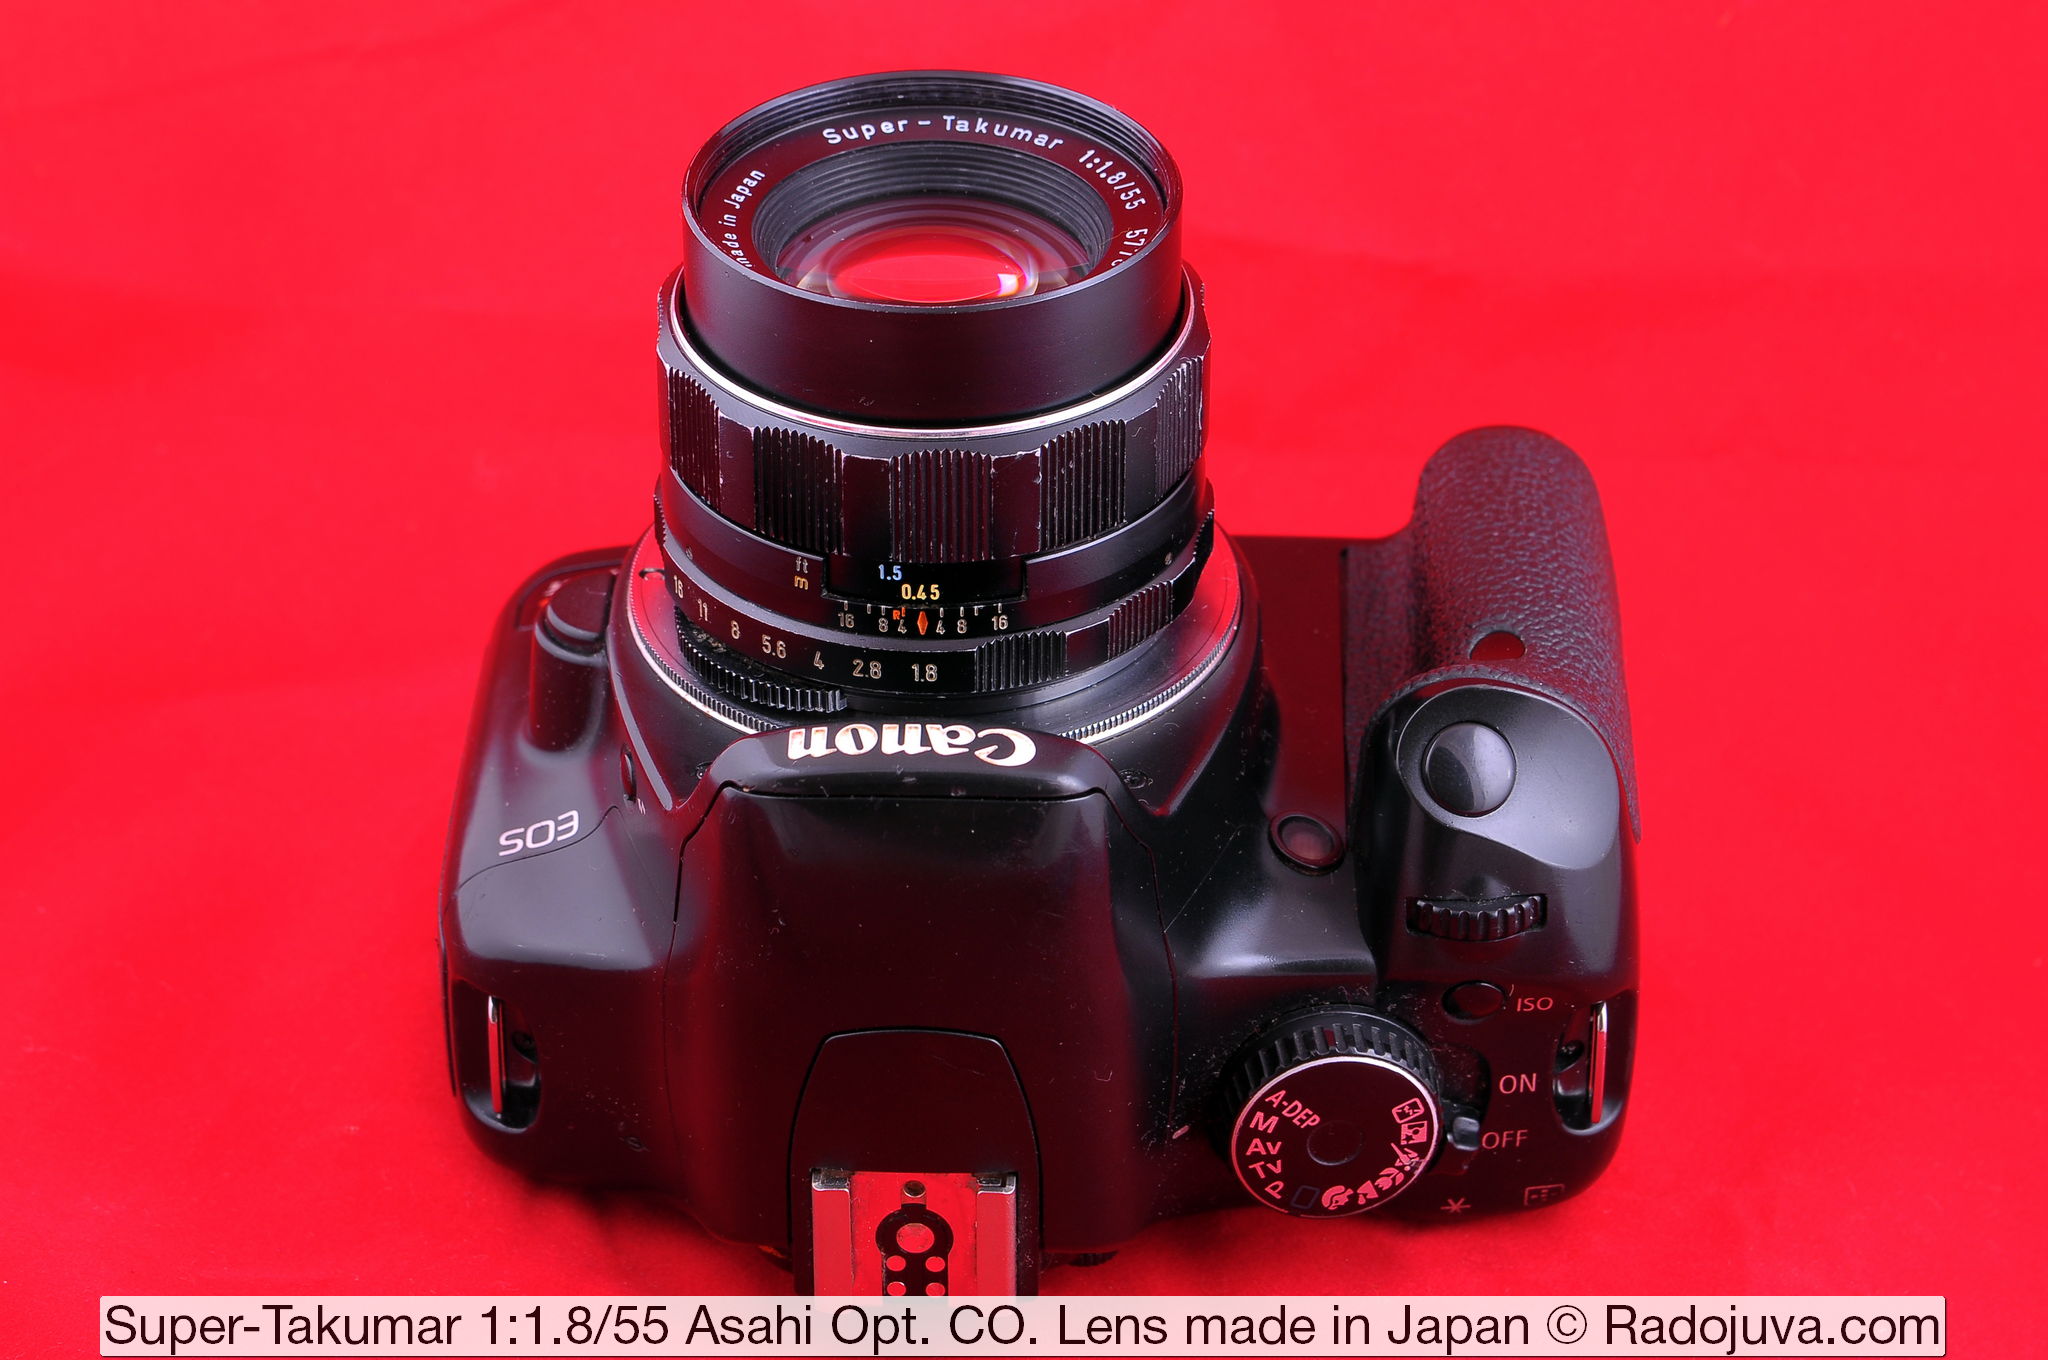 Super-Takumar 1:1.8/55 Asahi Opt. Co. Lens gemaakt in Japan. Lens getoond op Canon EOS DIGITAL Rebel XSi DSLR. De lens werd op de camera gemonteerd met behulp van een M42-Canon EOS-adapter met een chip.